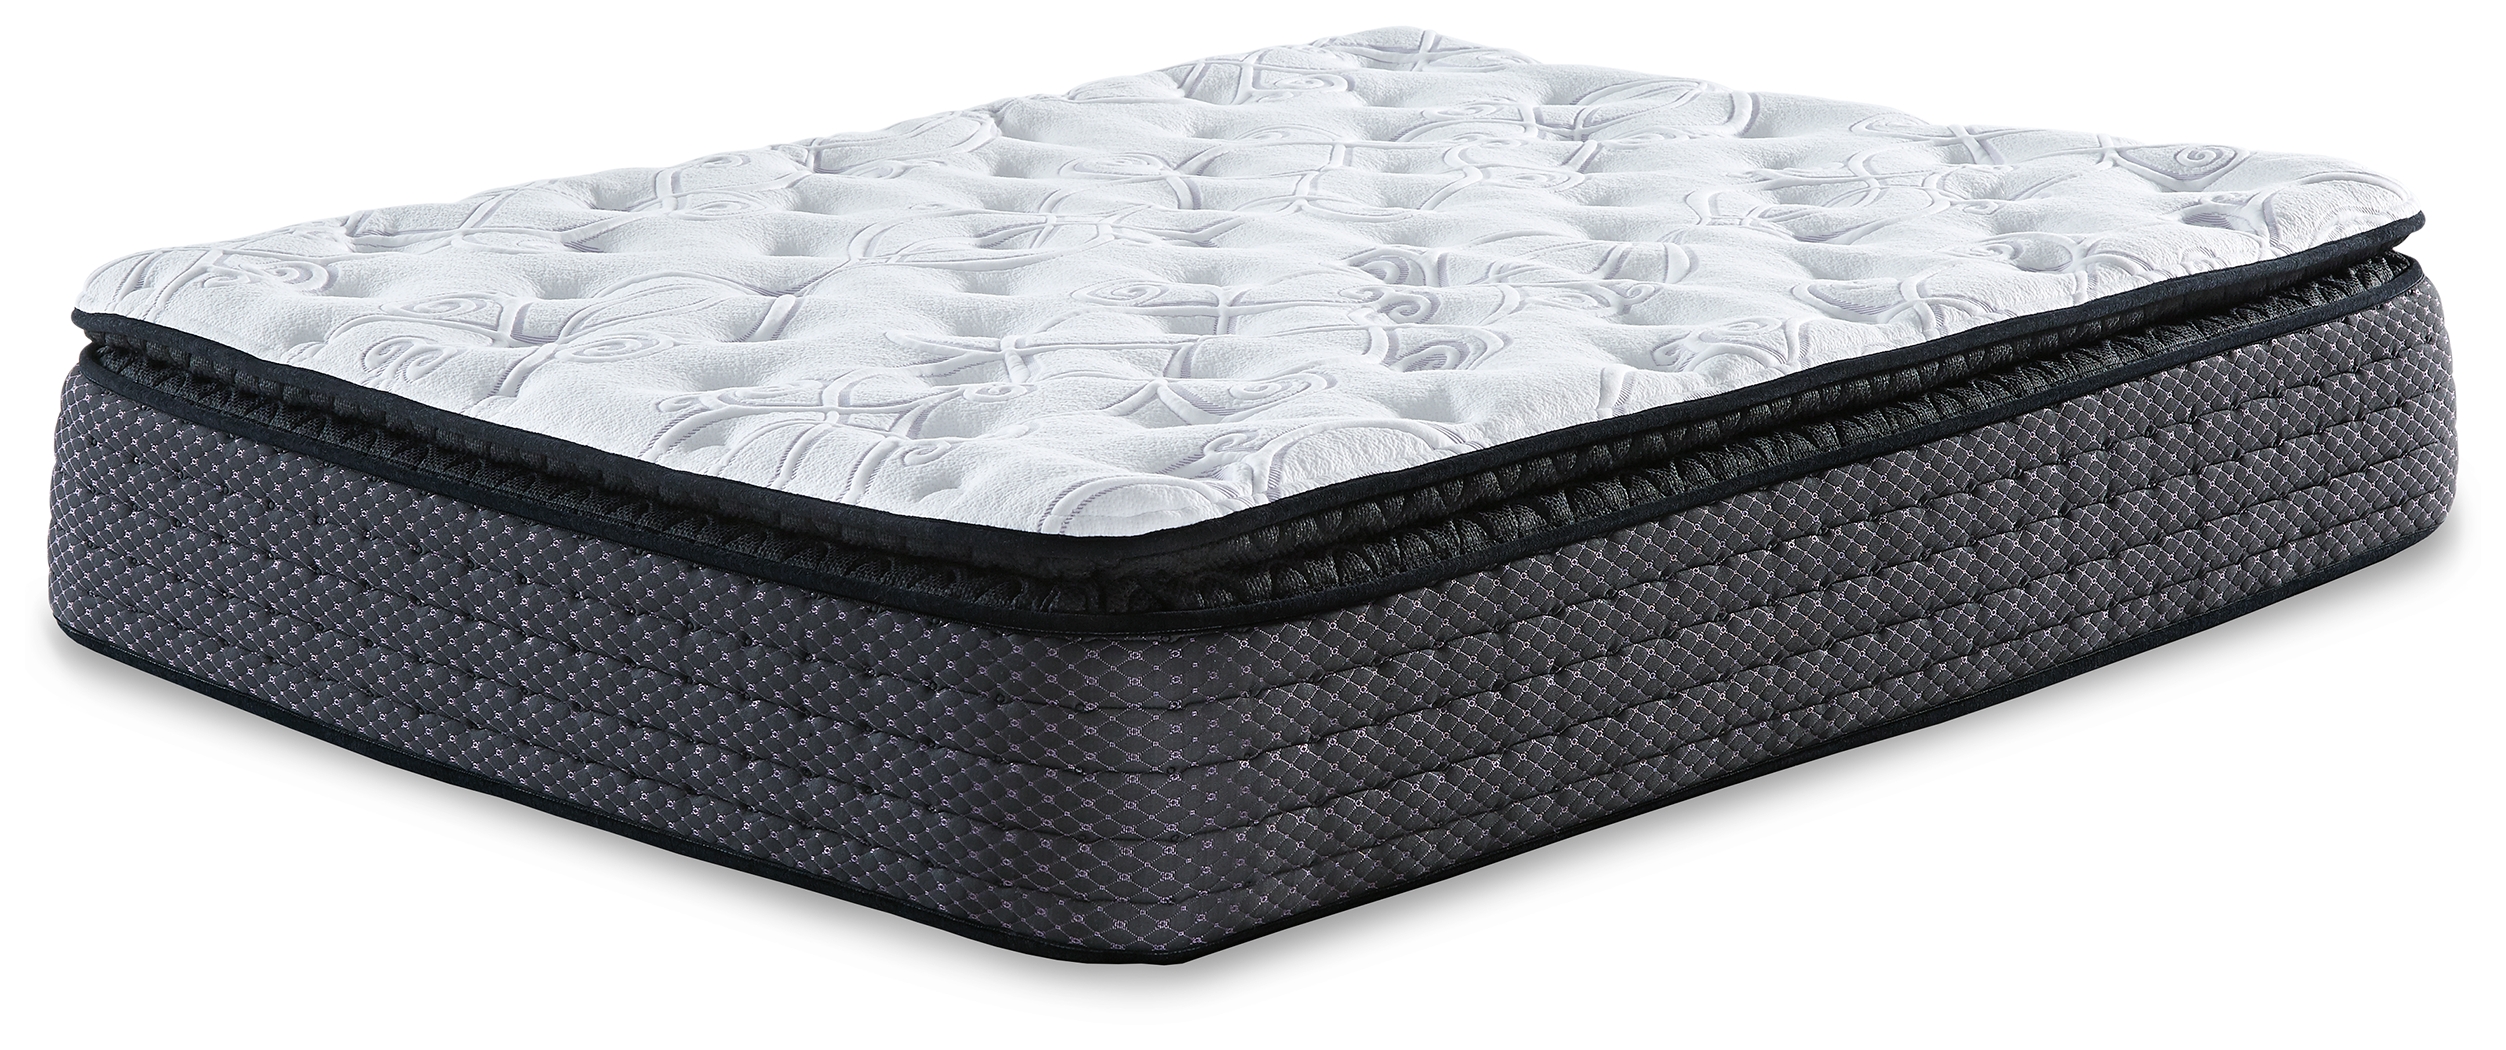 mattress sale queen firm intercoil pillowtop